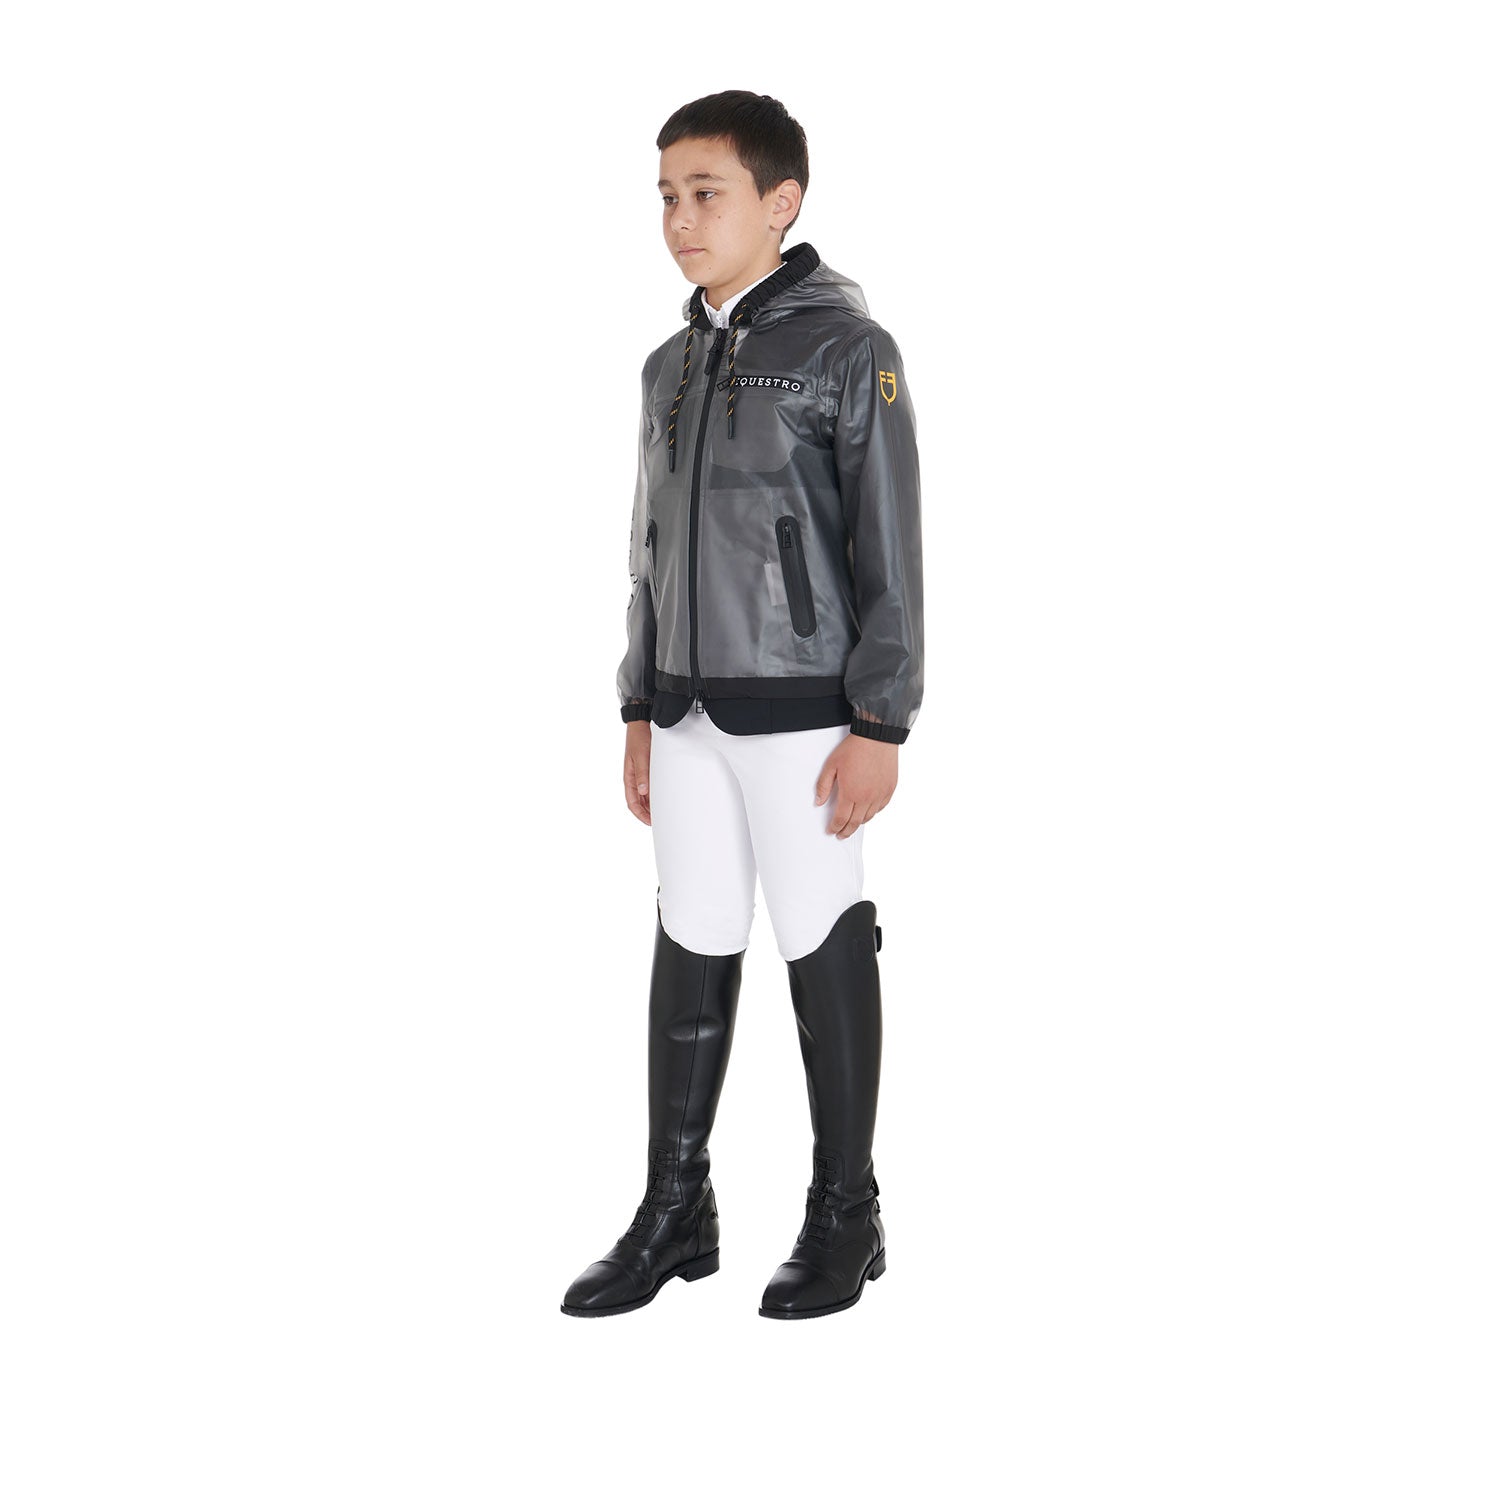 Junior equestrian rain coat